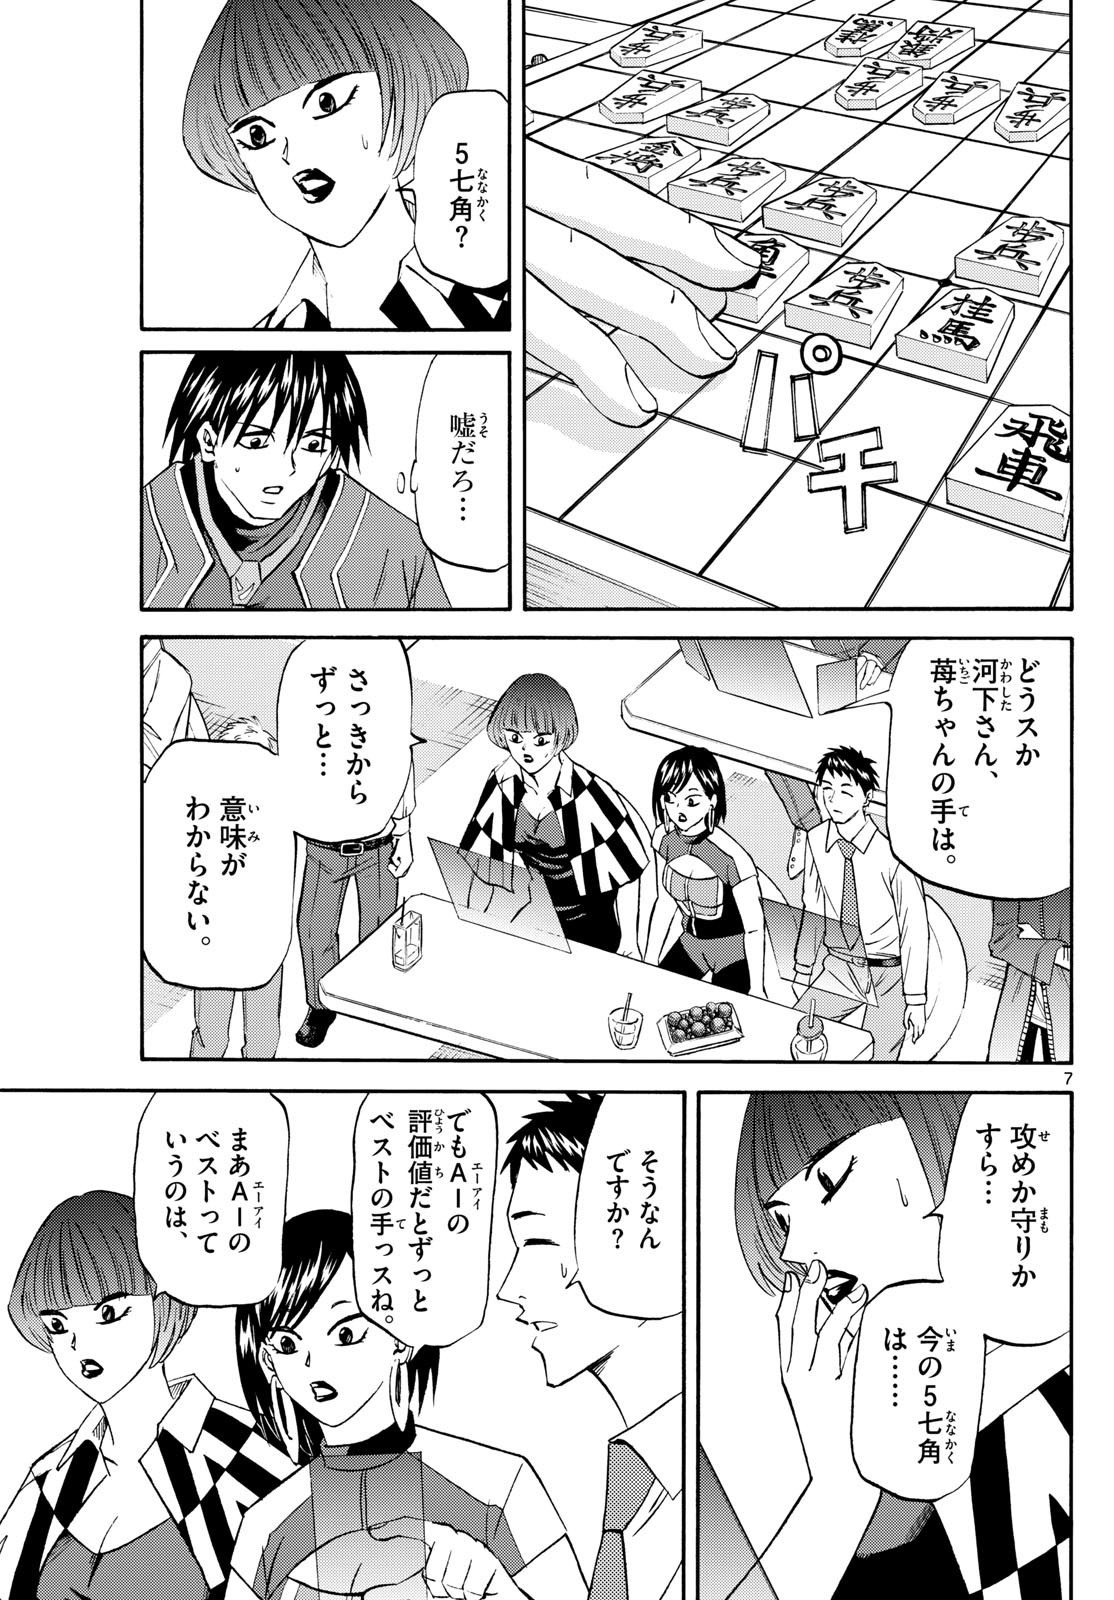 Ryu-to-Ichigo - Chapter 198 - Page 7